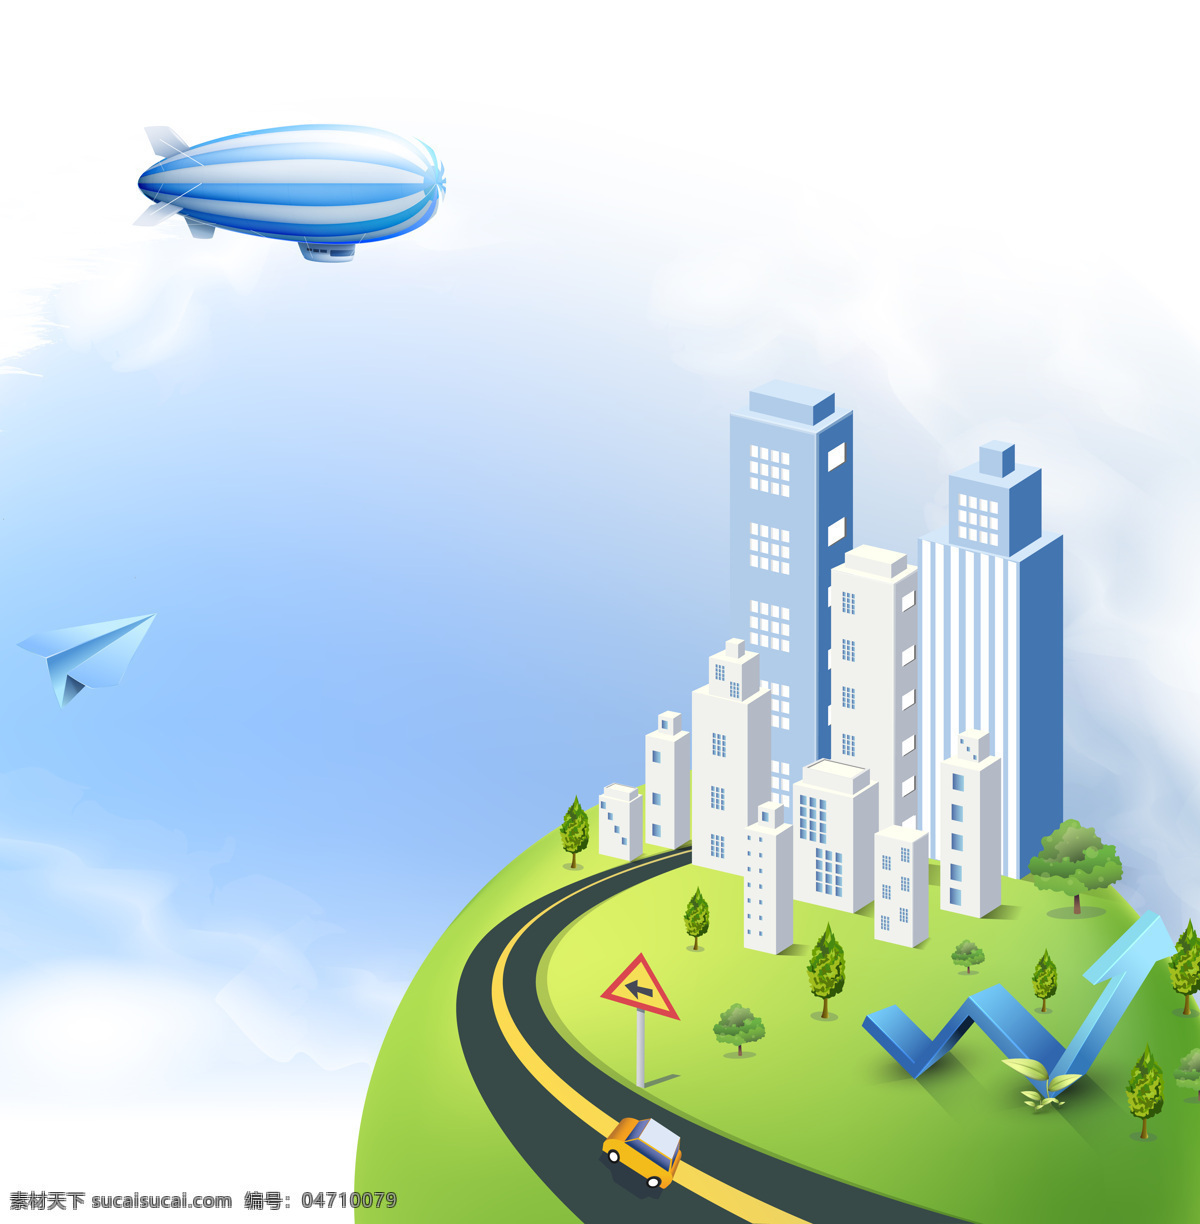 草坪 动漫动画 风景漫画 广告 环保 楼盘宣传 绿色 马路 绿色小区 小区 宣传 汽车 热气球 纸飞机 矢量图 建筑家居